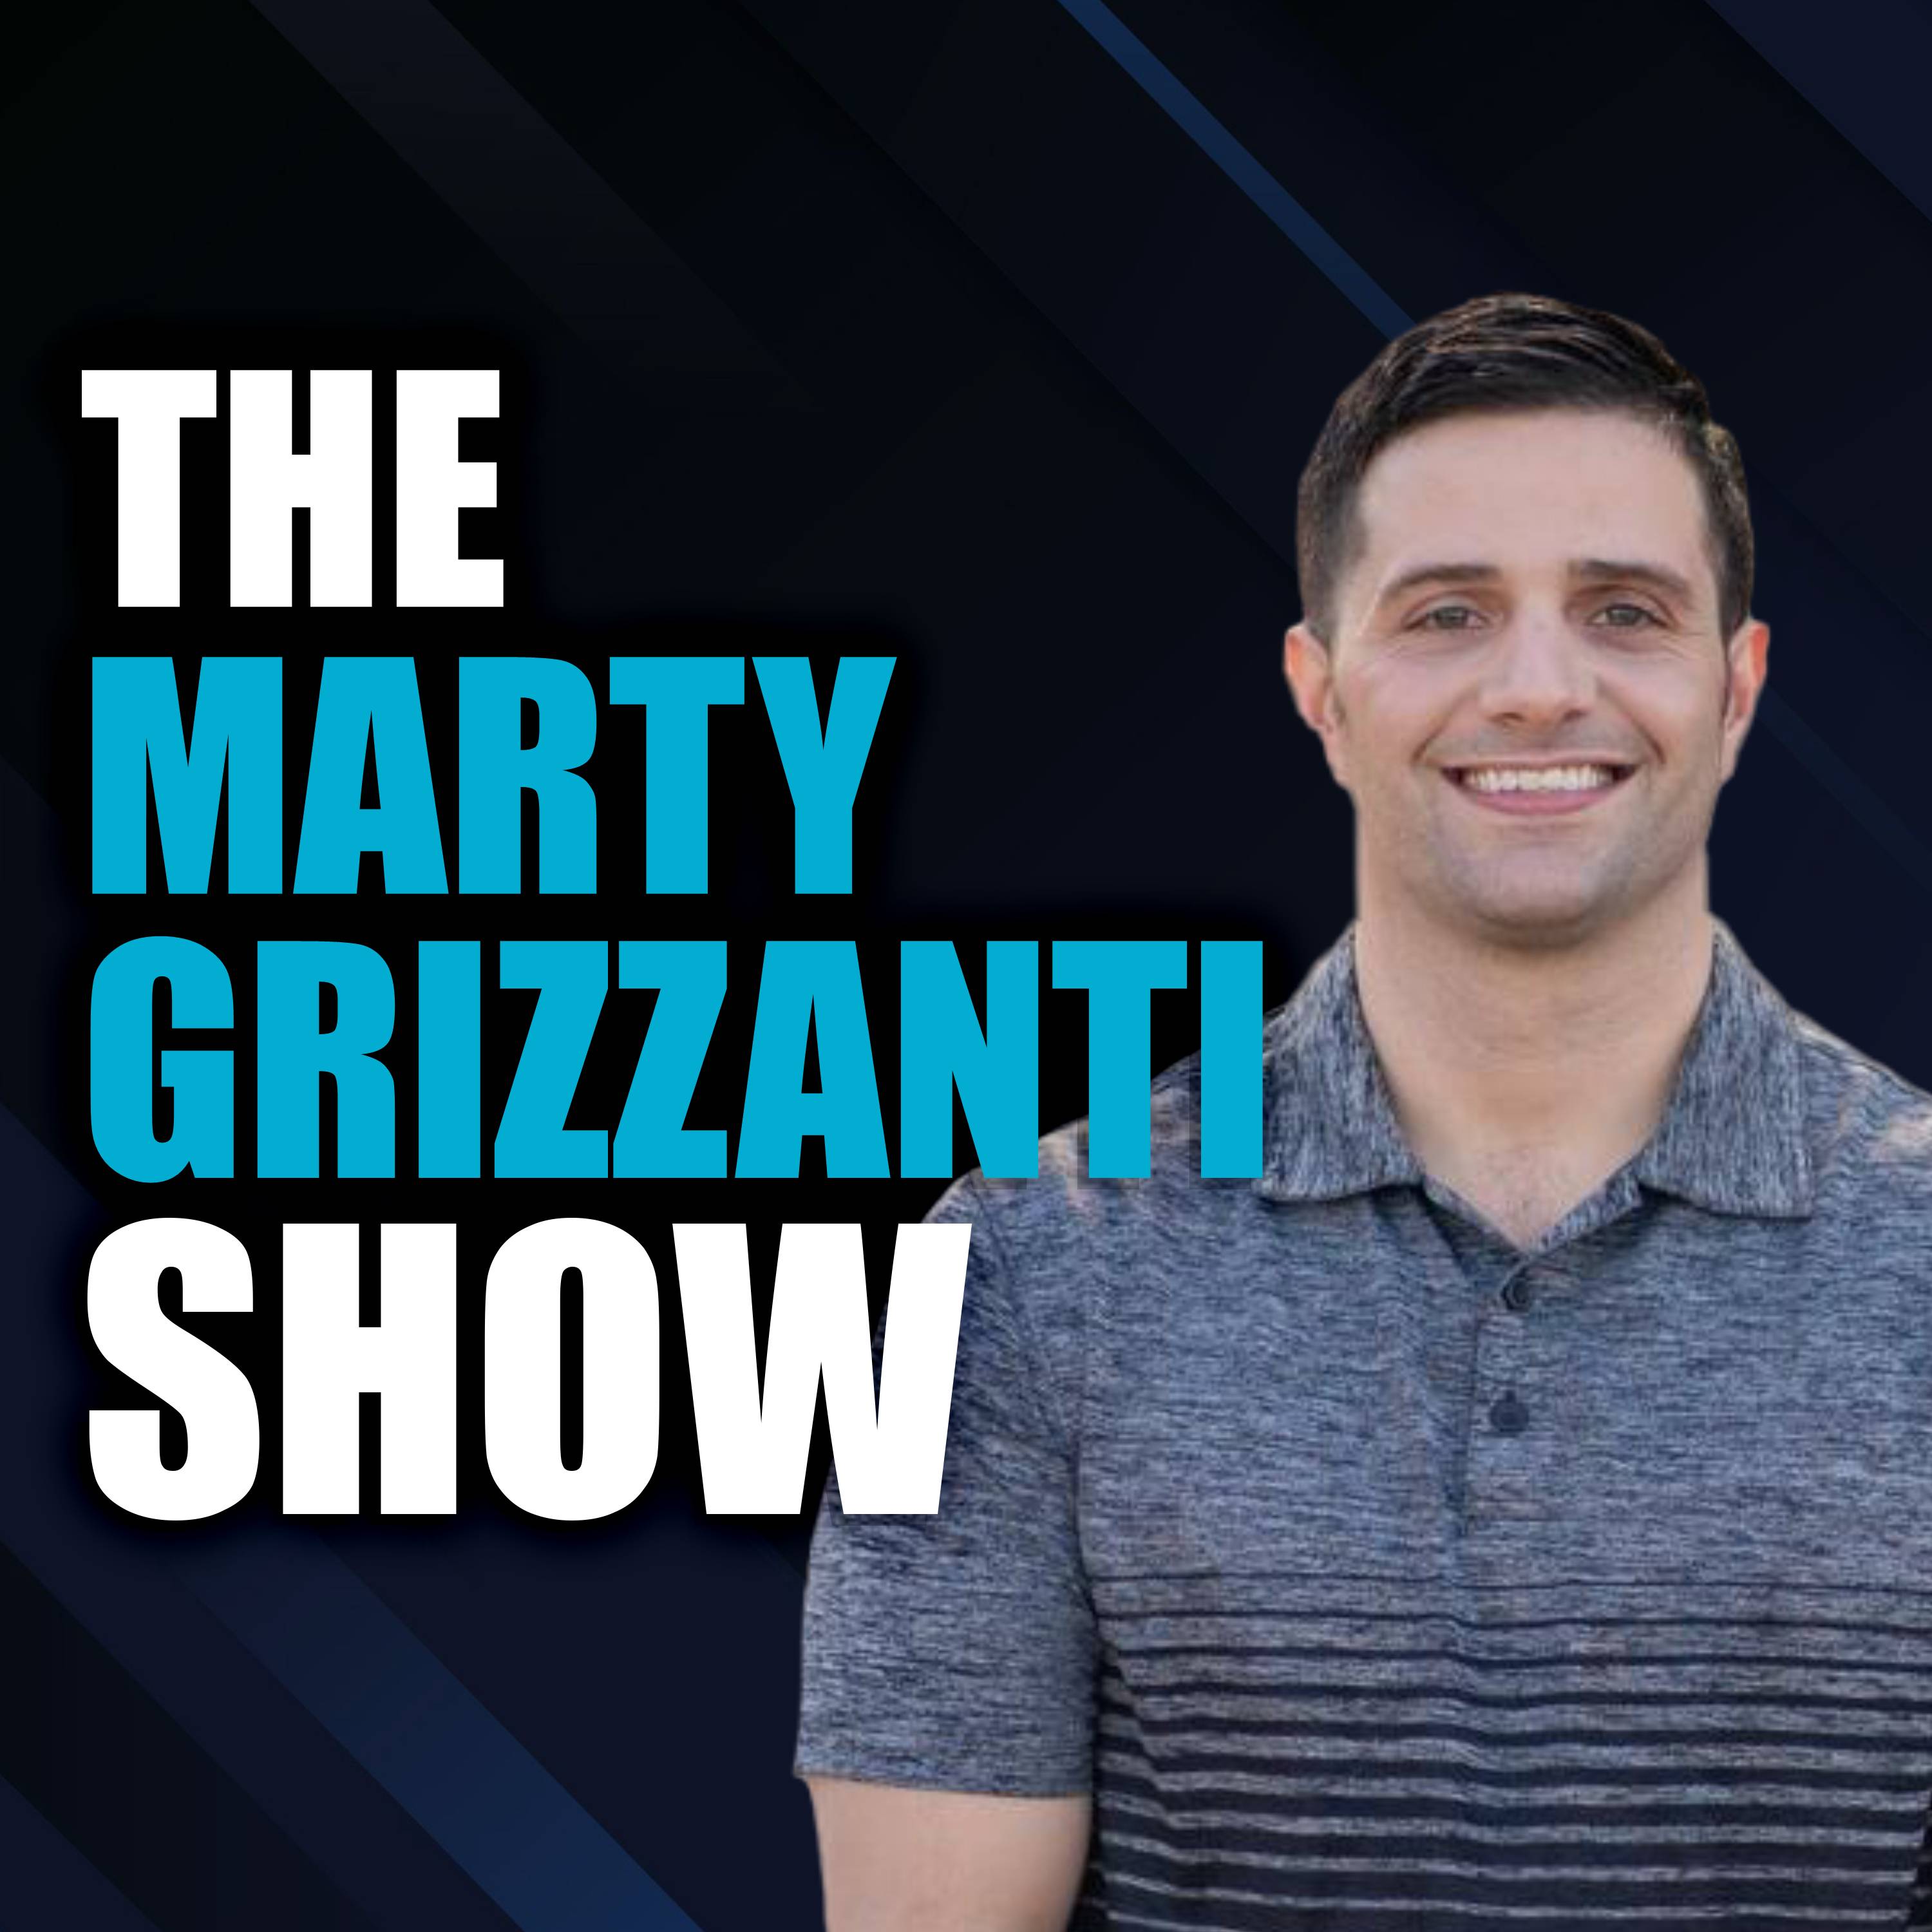 The Marty Grizzanti Show's artwork